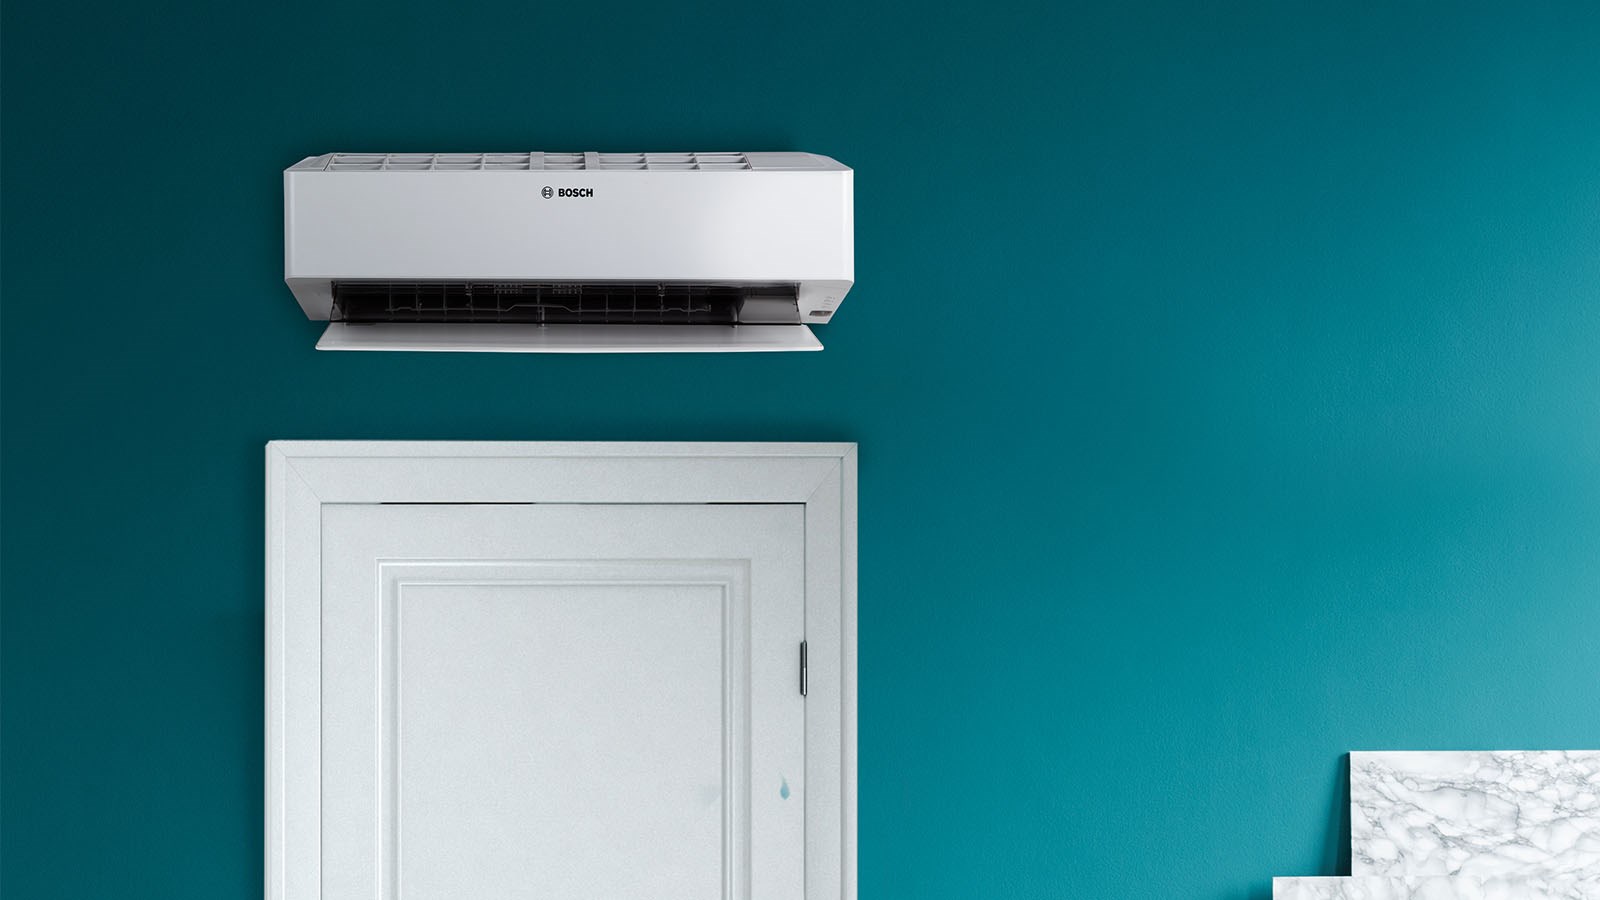 Luft/luftvärmepump Bosch Climate placerad ovanför dörröppning